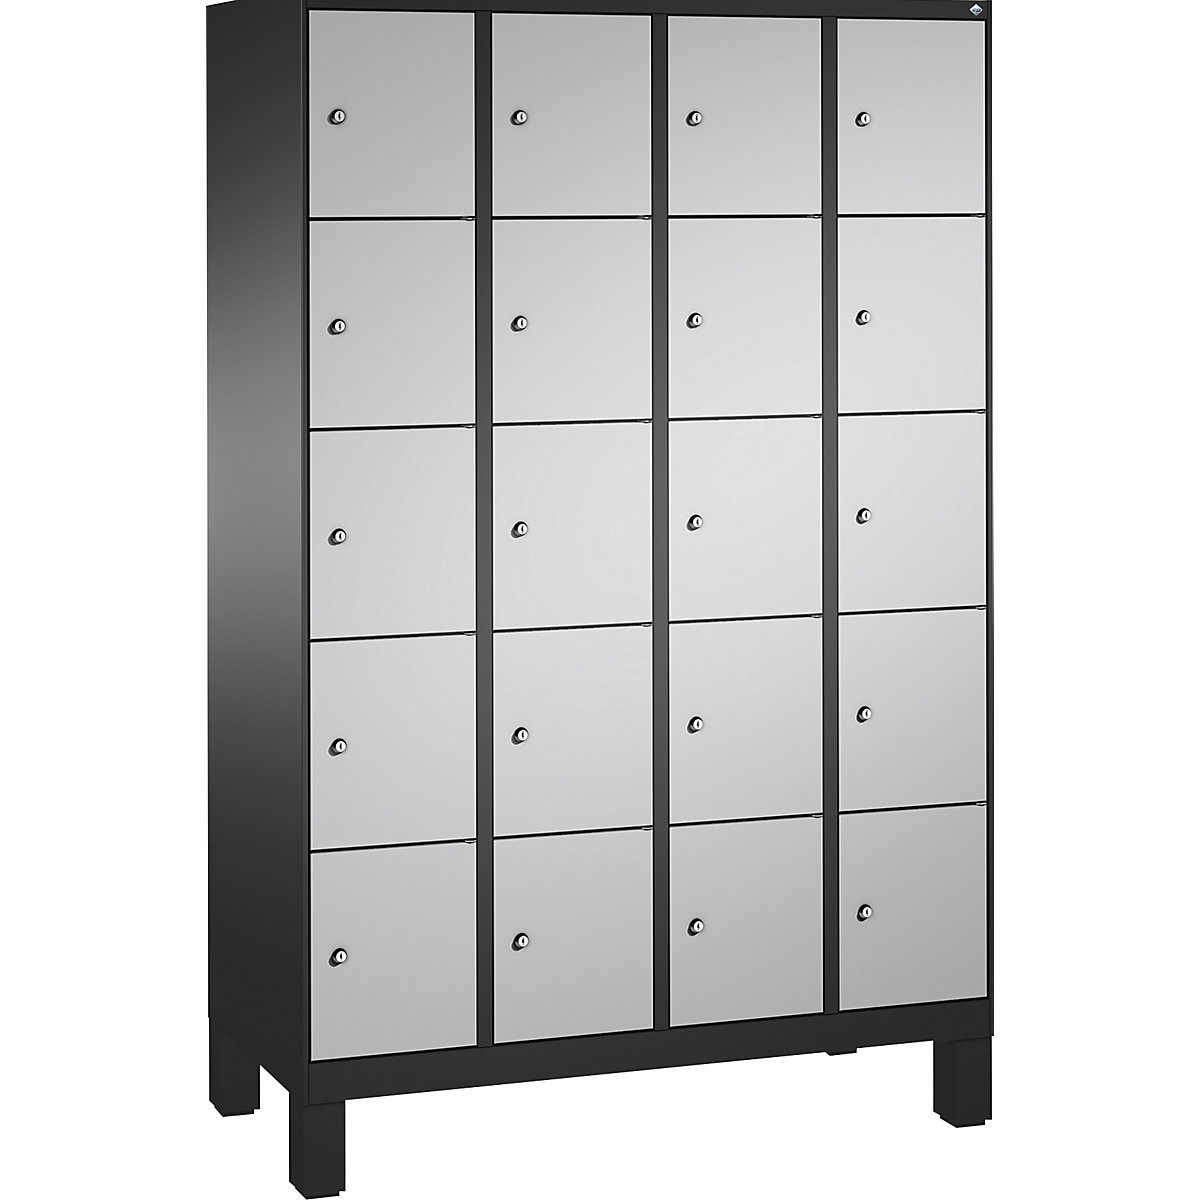 Armoire à casiers sur pieds EVOLO – C+P, 4 compartiments, 5 casiers chacun, largeur compartiments 300 mm, gris noir / aluminium-4